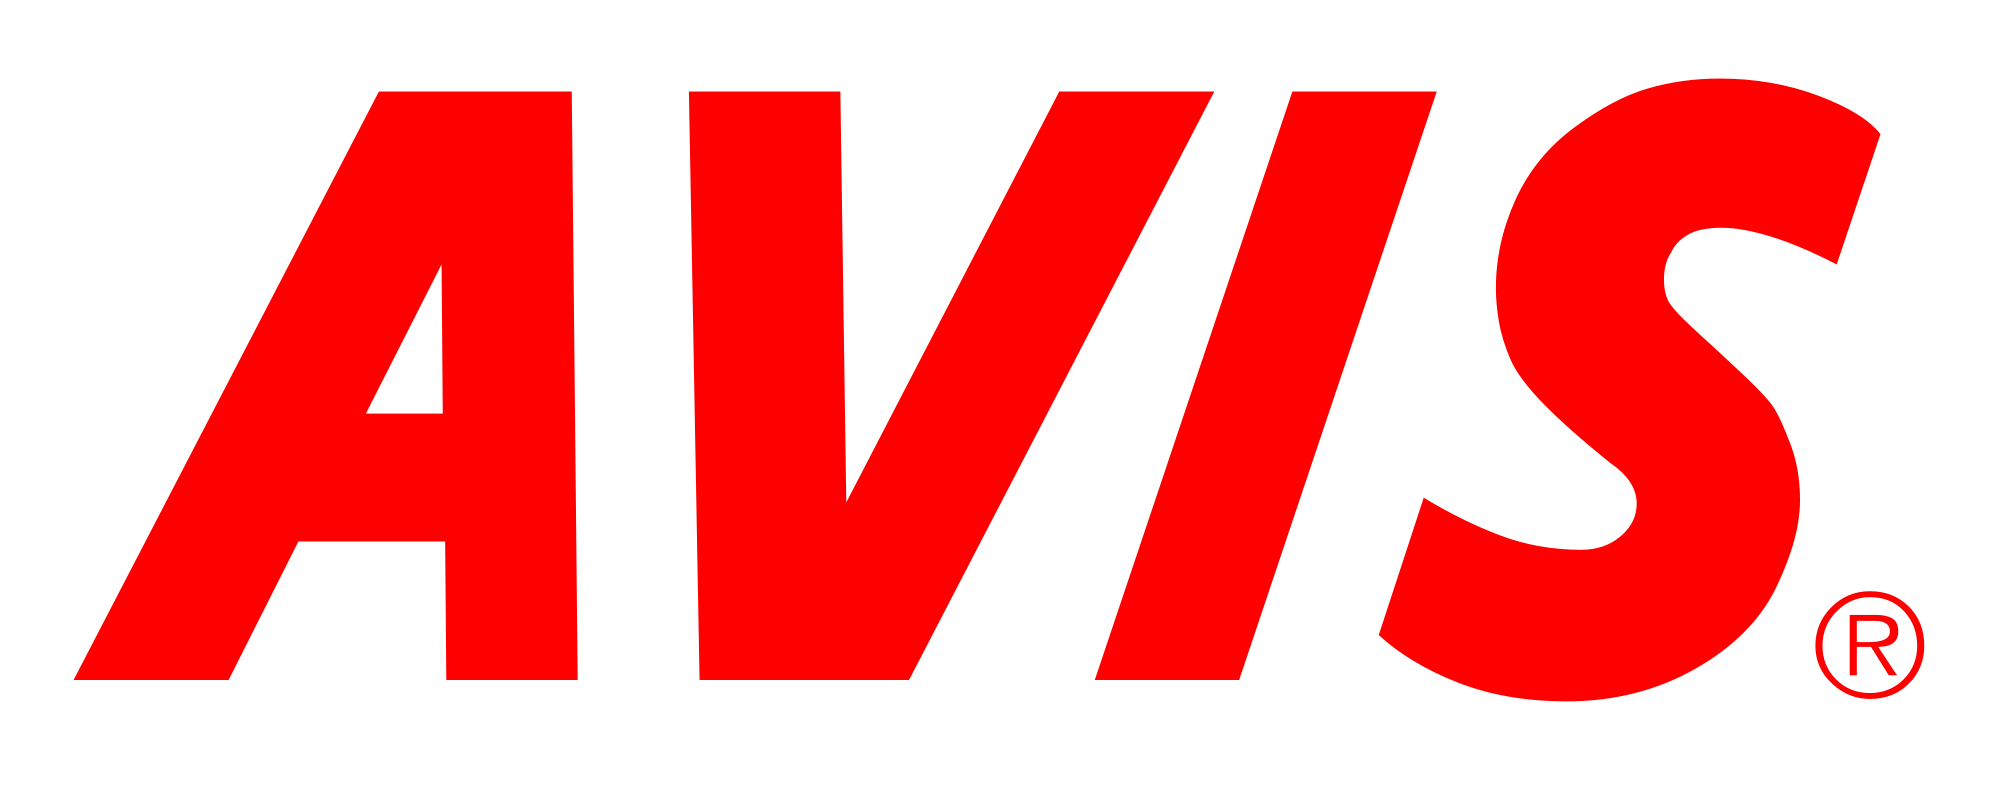 Avis Logo - File:Avis logo.svg - Wikimedia Commons